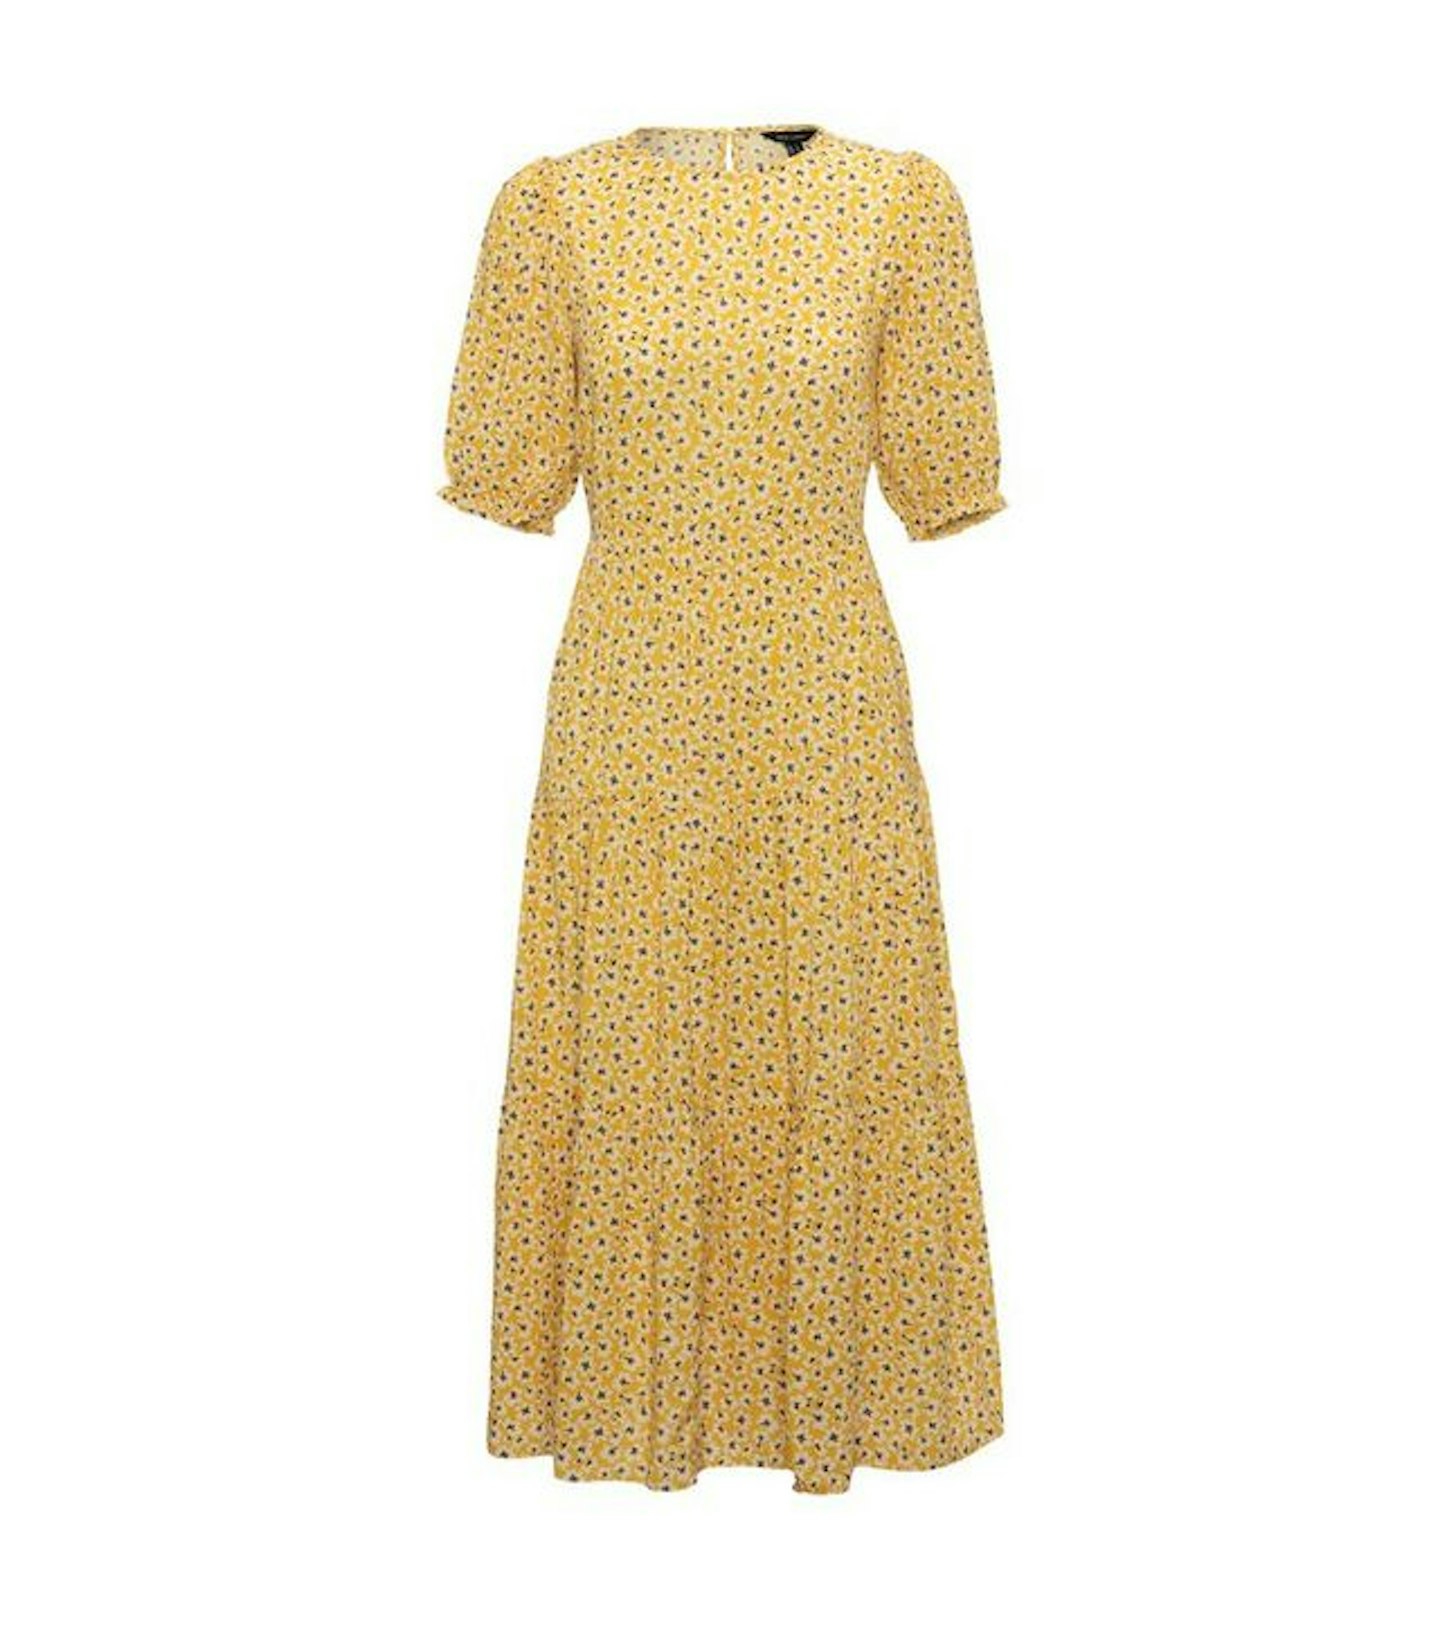 New Look, Mustard Floral Puff Sleeve Midi Dress, £25.99